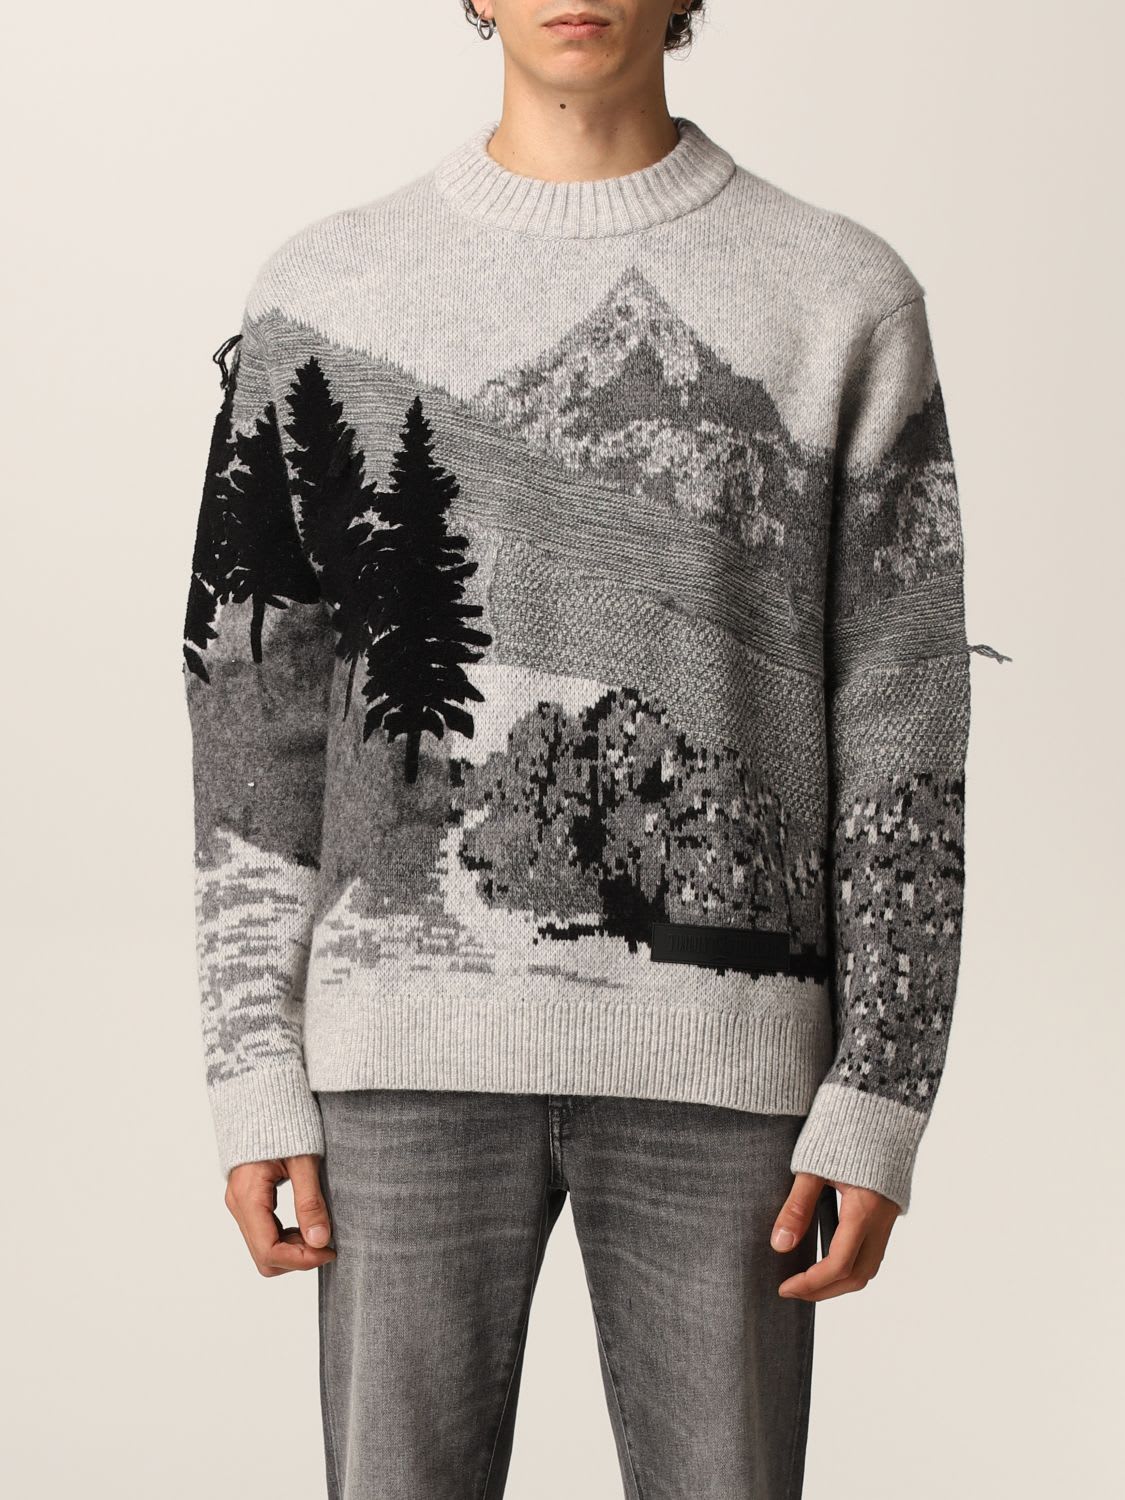 Hilfiger Denim Hilfiger Collection Sweater Sweater Men Hilfiger Collection